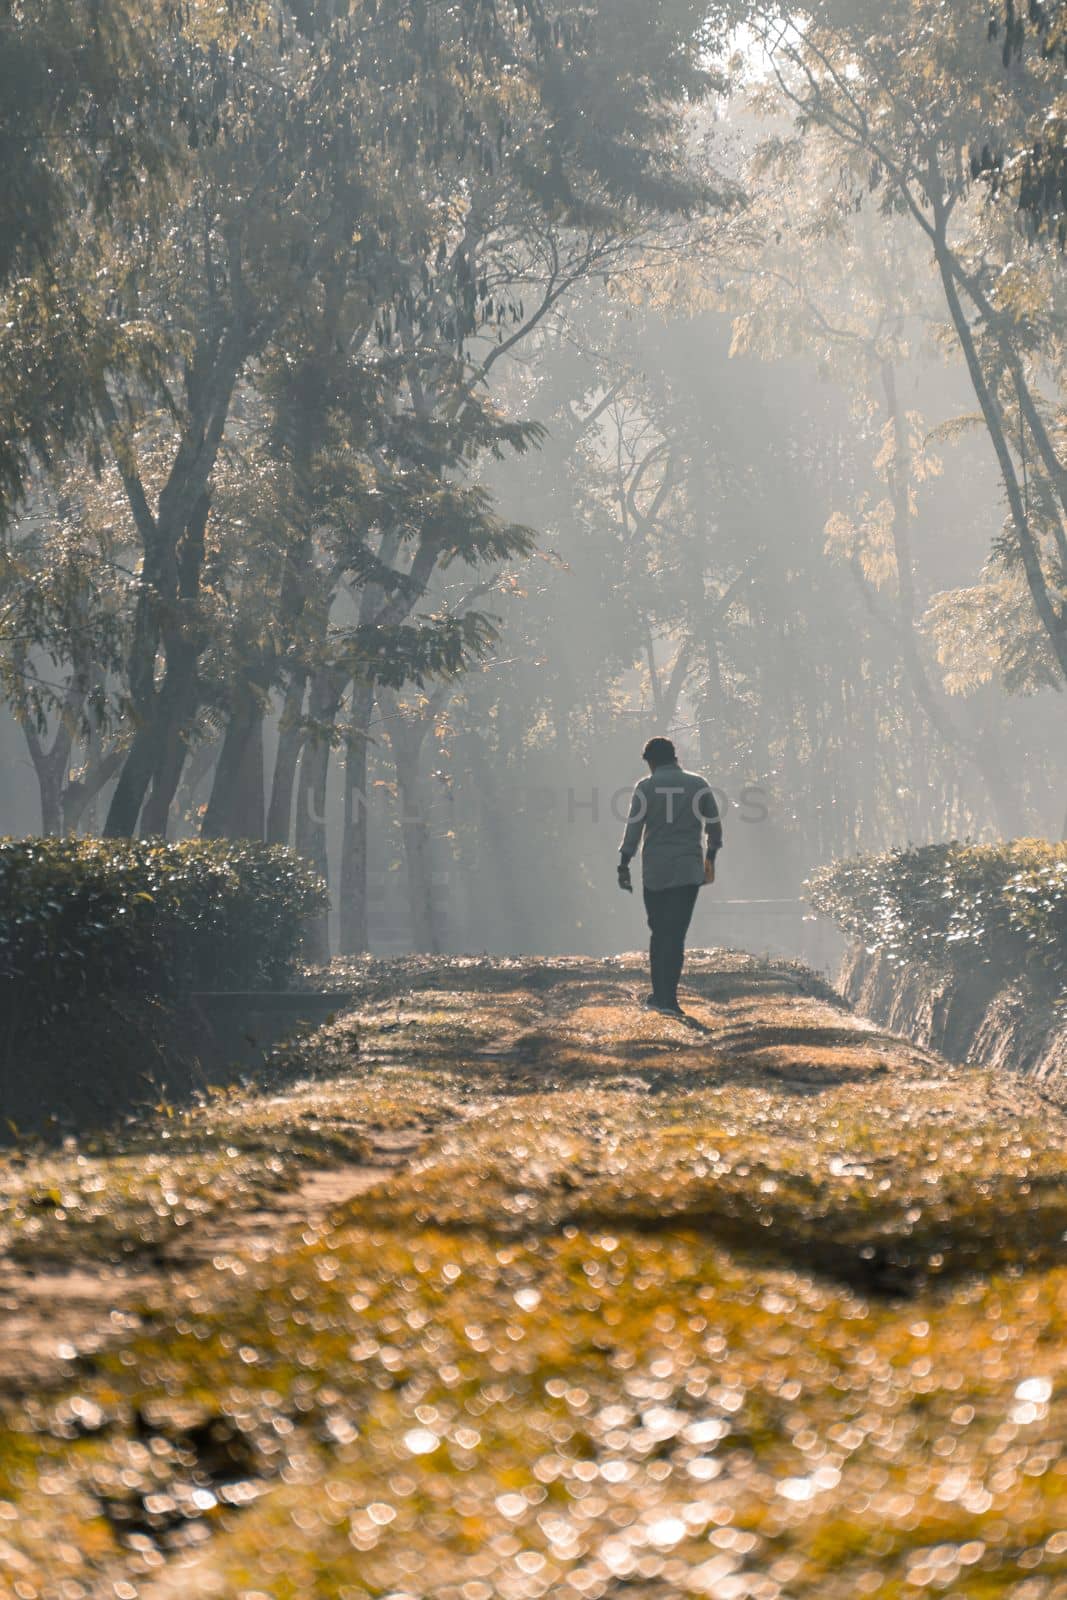 A person walking along a tree garden road, Selective Focus